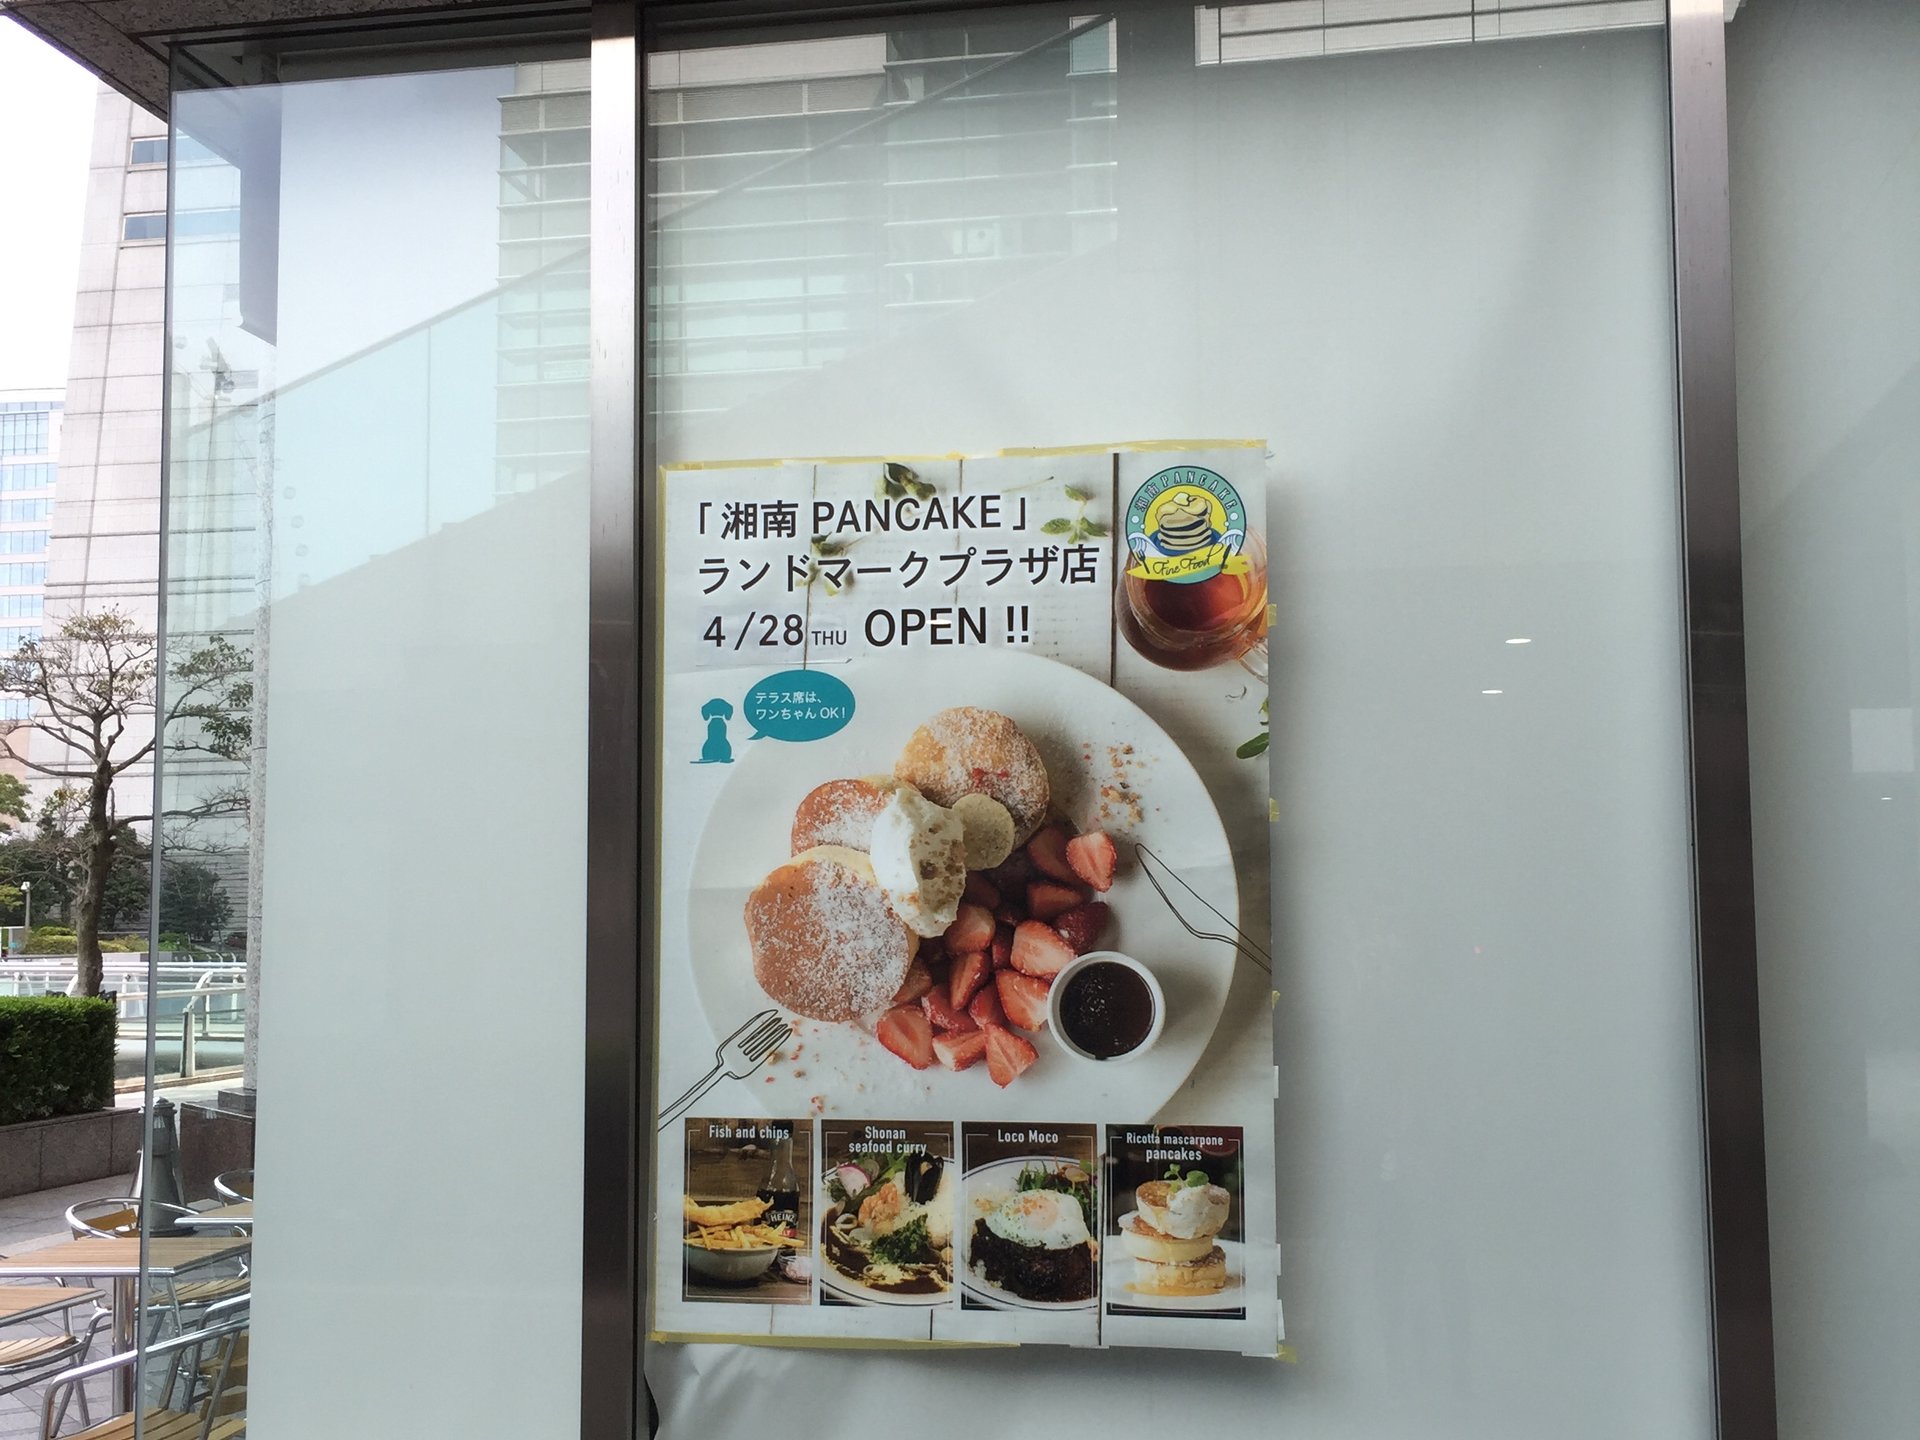 湘南パンケーキが横浜ランドマークタワー1階にオープン！ふわふわ柔らかパンケーキが絶品です！